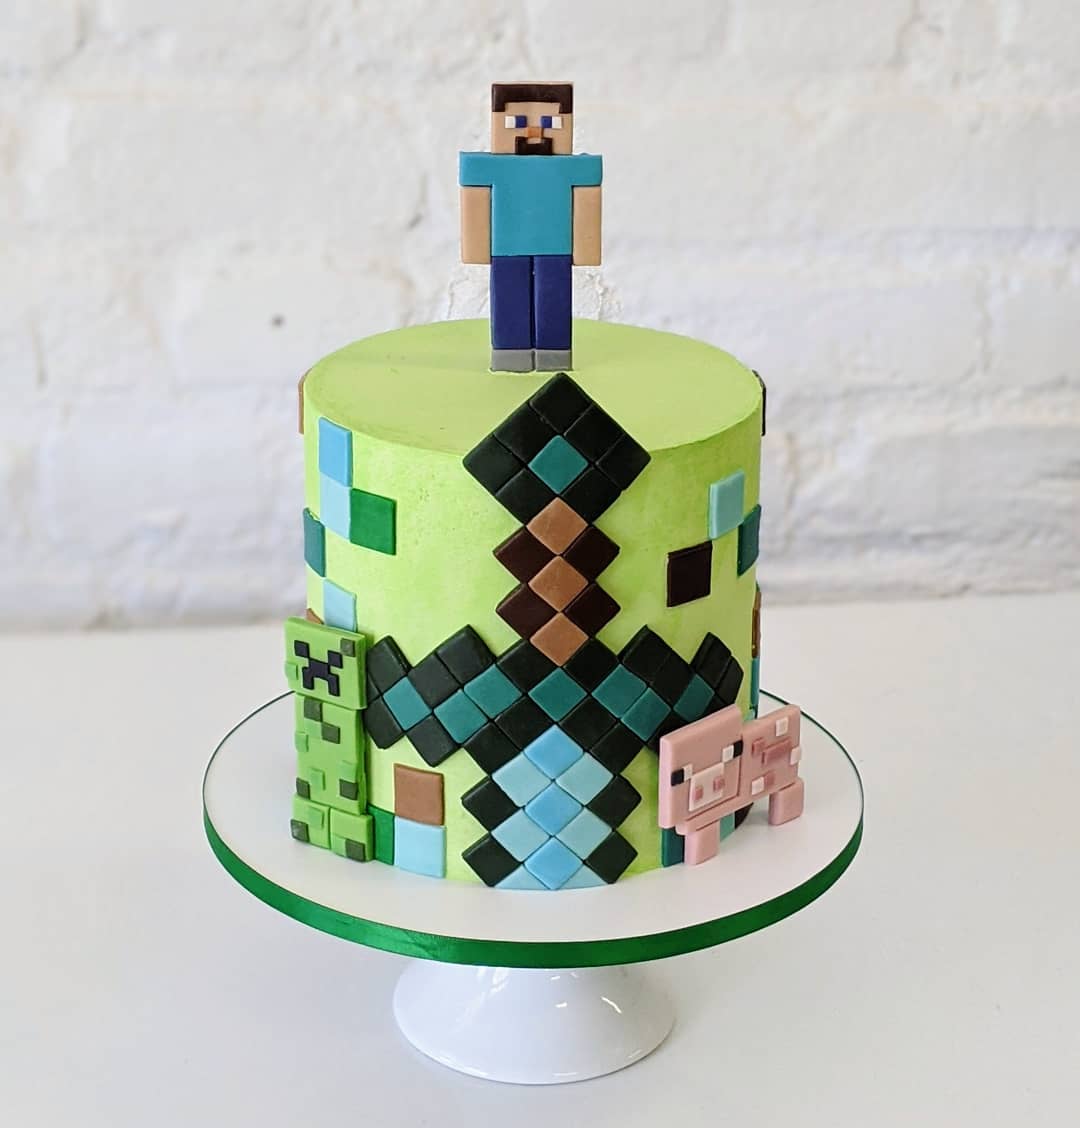 Minecraft Creeper Face Edible Icing Sheet Cake Decor Topper